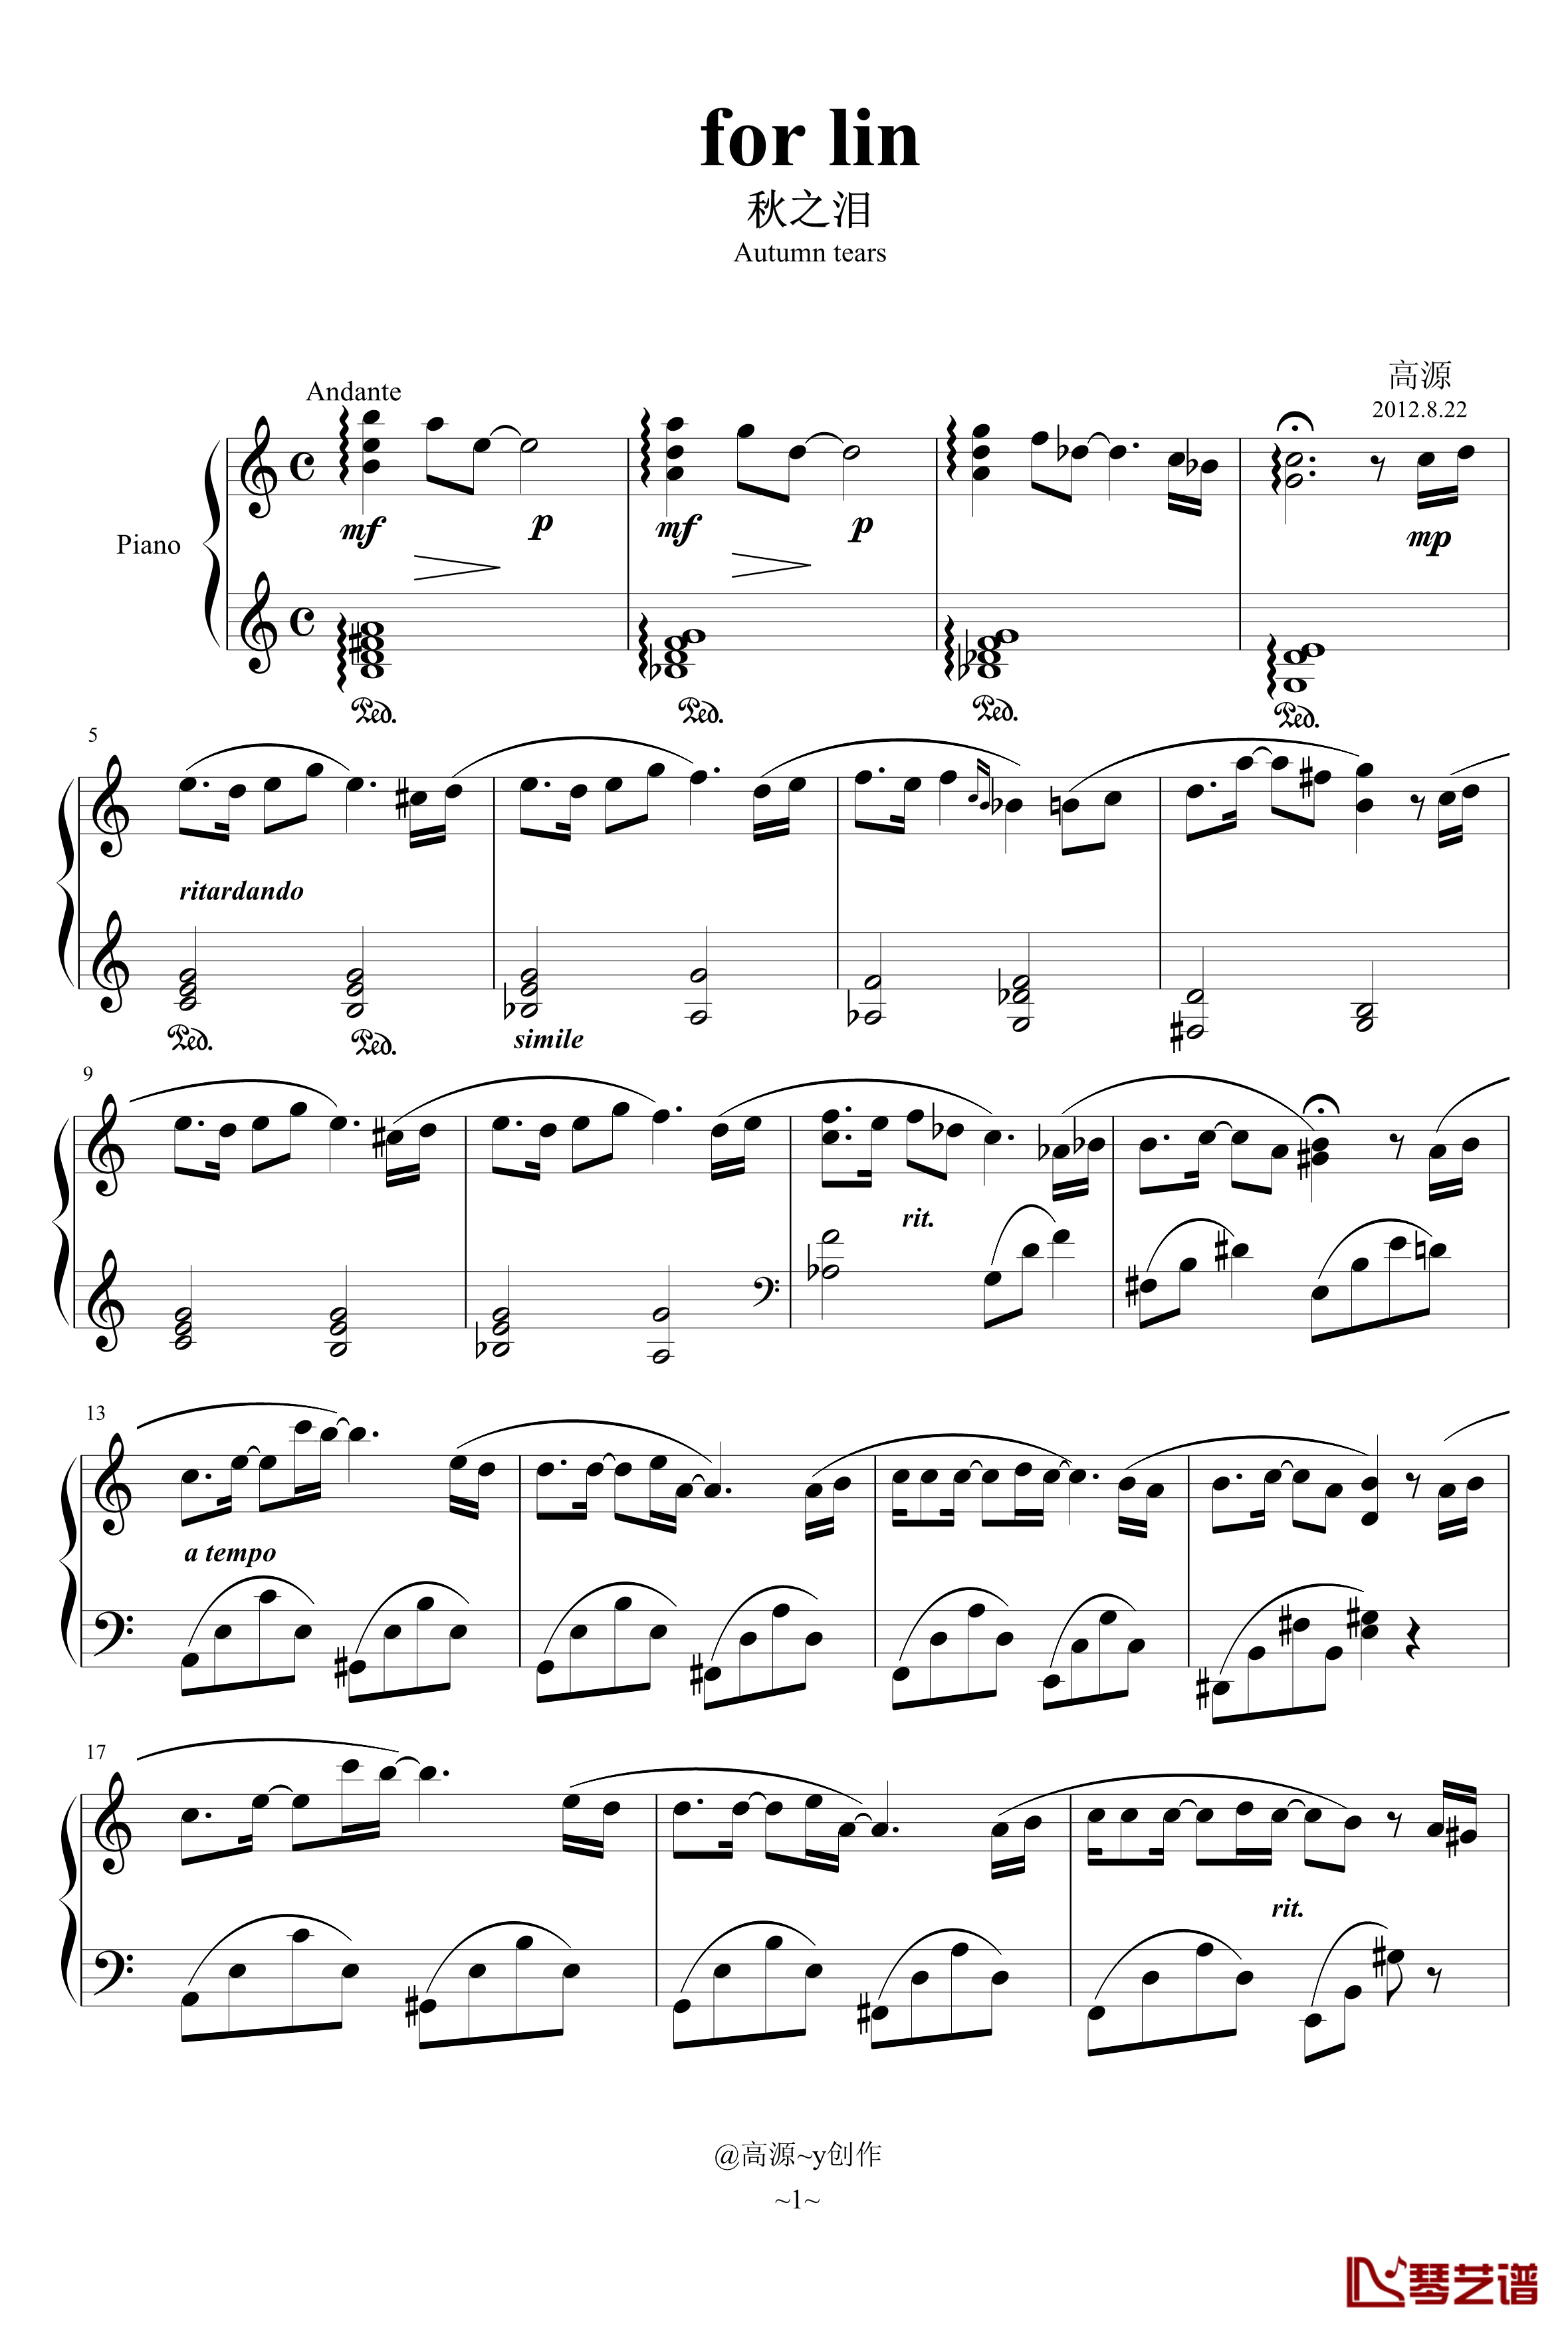 for lin钢琴谱-秋之泪-高源1